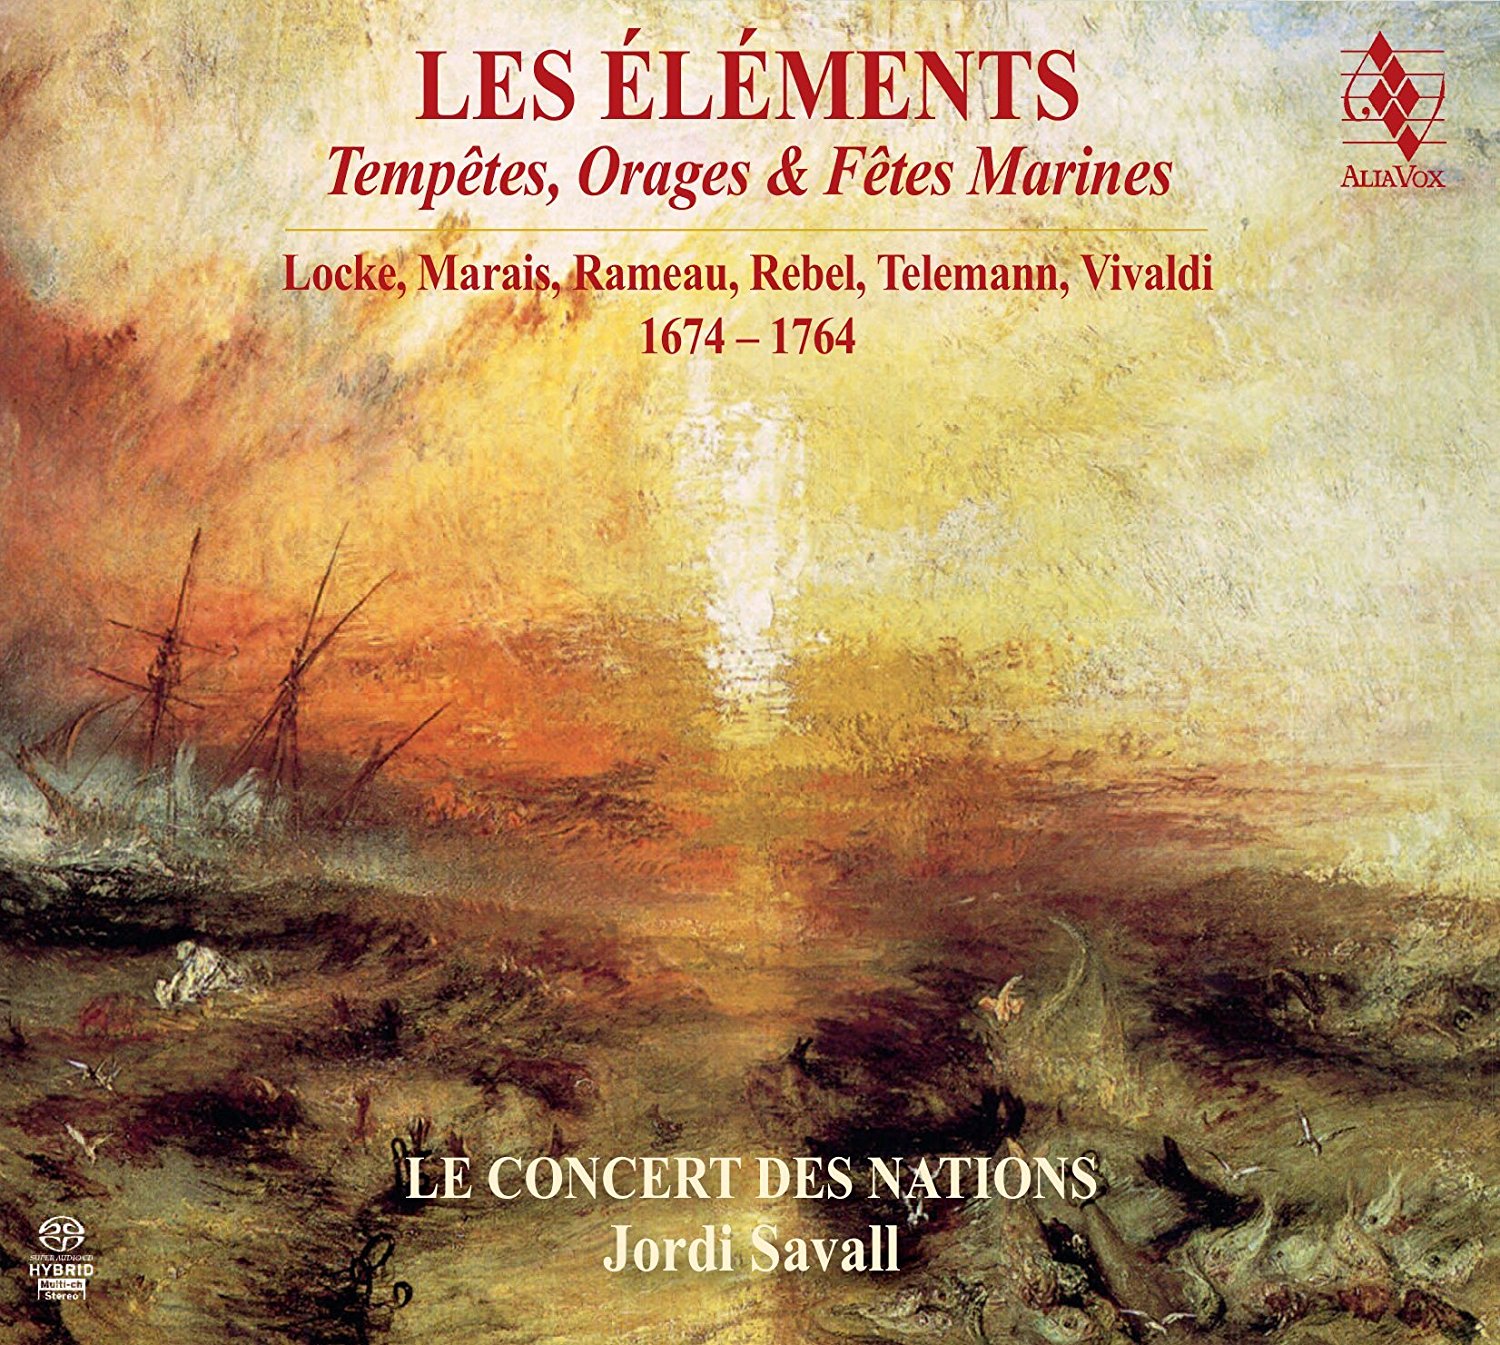 Les Elements - Tempetes, Orages & Fetes Marines 1674-1764 | Le Concert des Nations